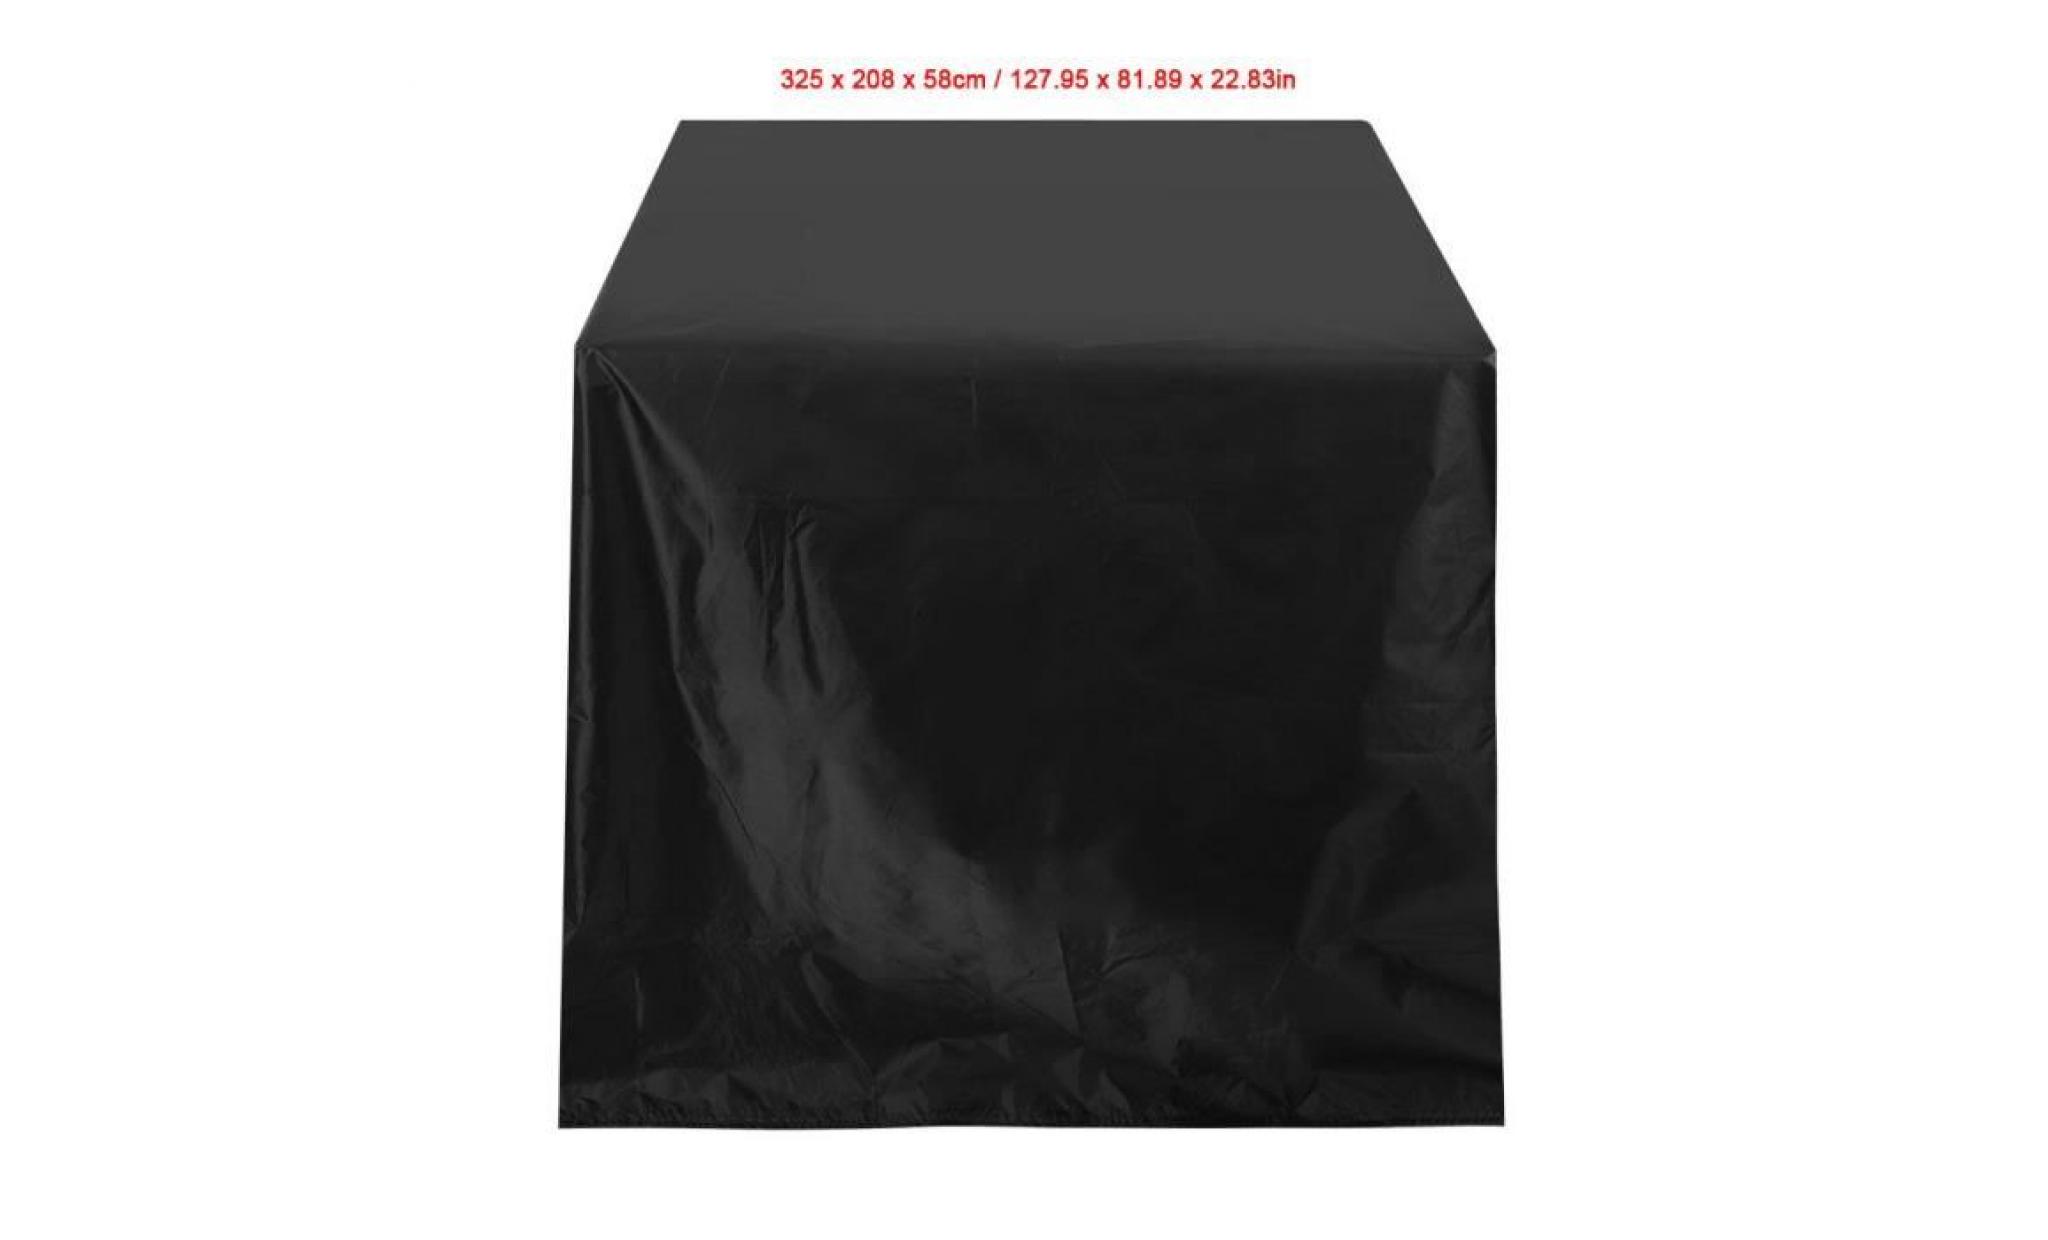 couverture de meubles housse couverture imperméable couverture antirouille tissu d'oxford couverture de table pas cher